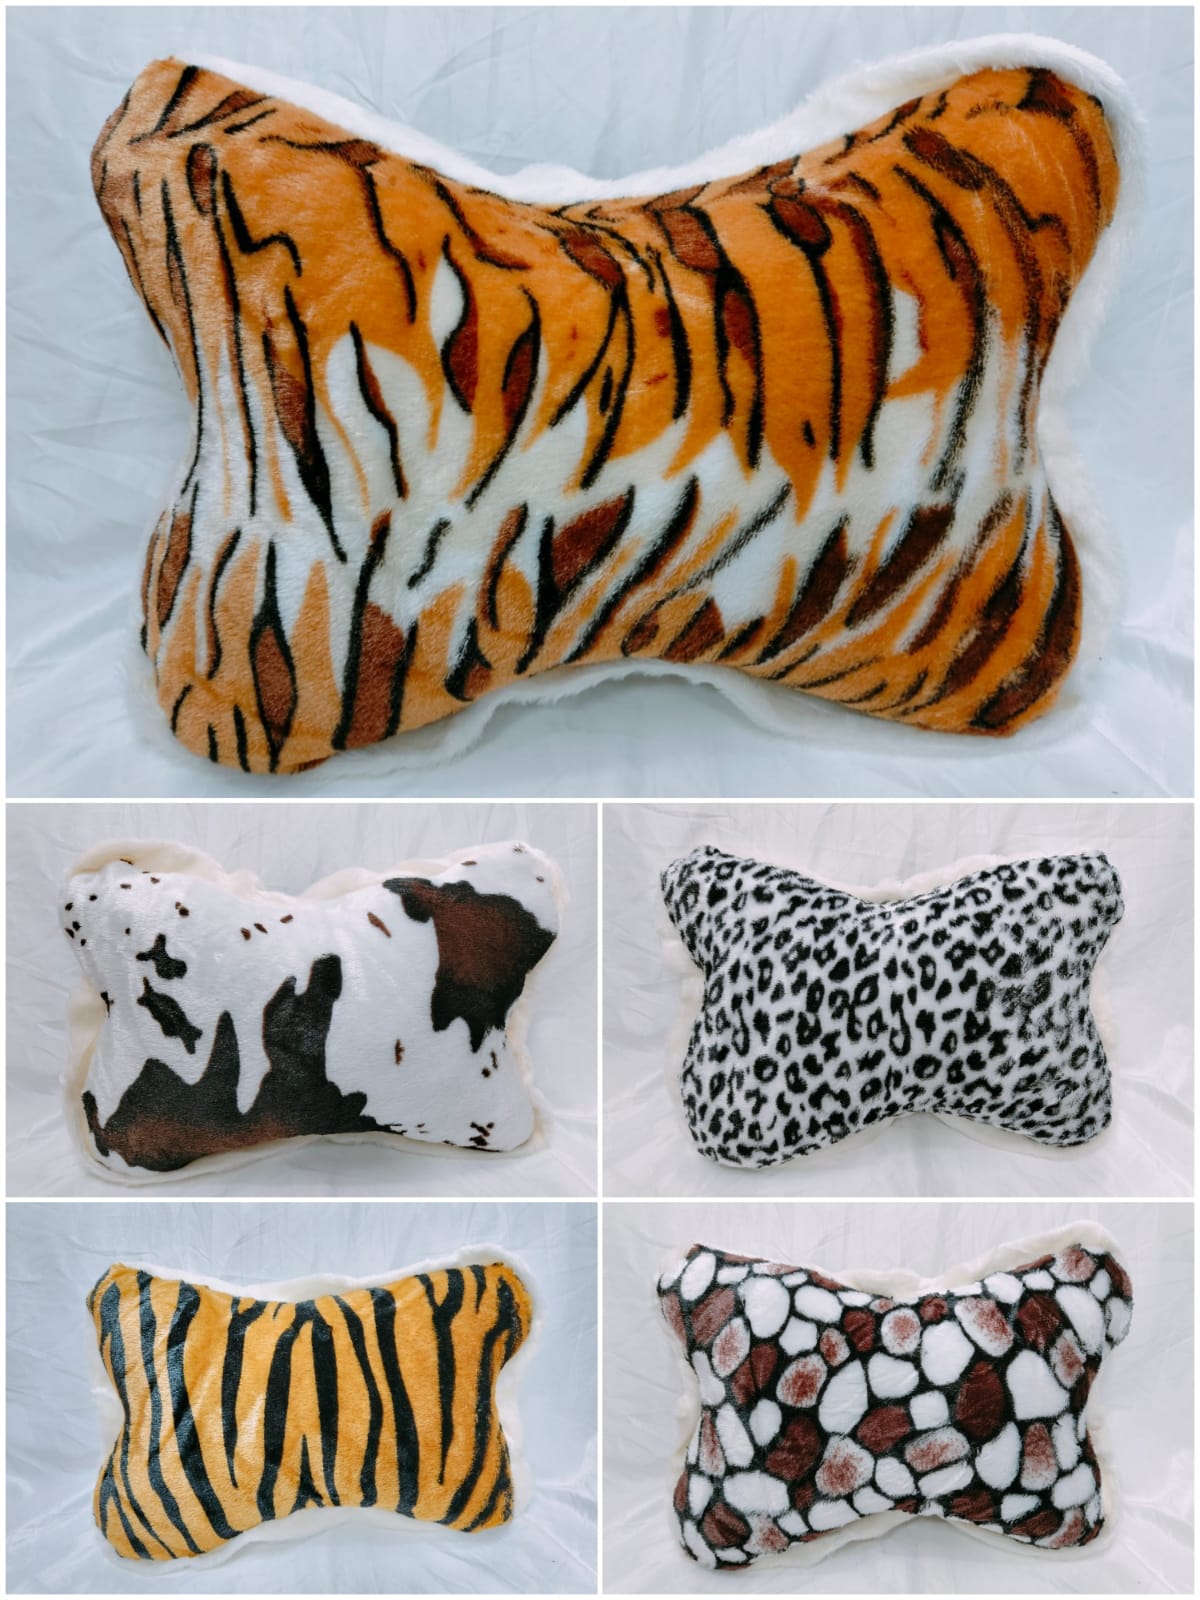 Tiger Print Pillow With Cheetah Print, Lumbar Pillow